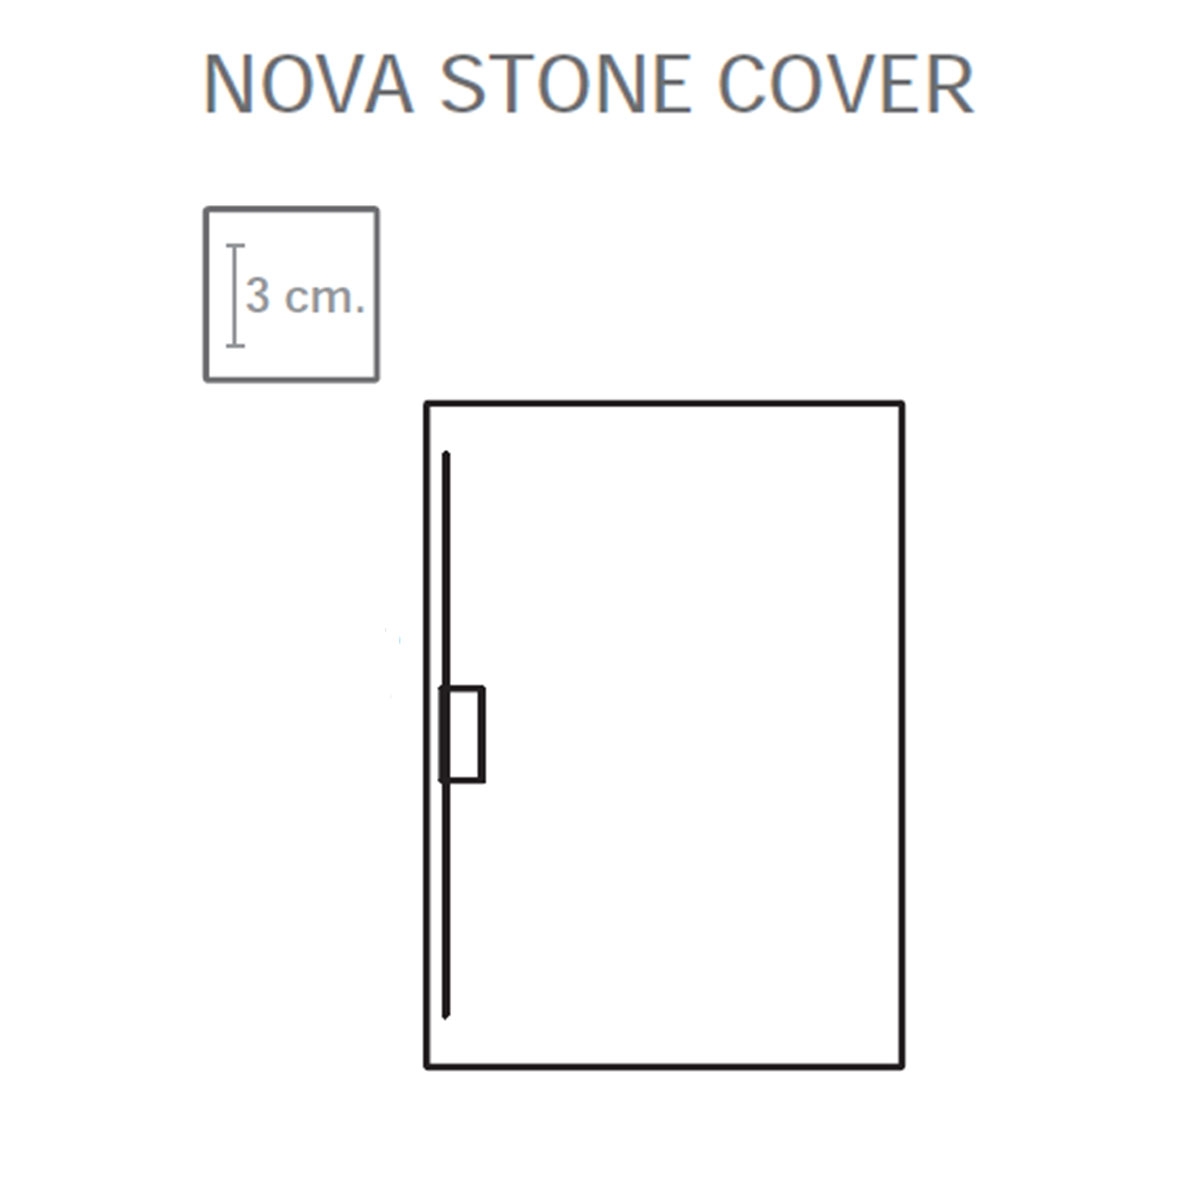 Platos de Ducha de Resina McBath - Plato de ducha rectangular 120x80 Nova Stone Cover Cemento